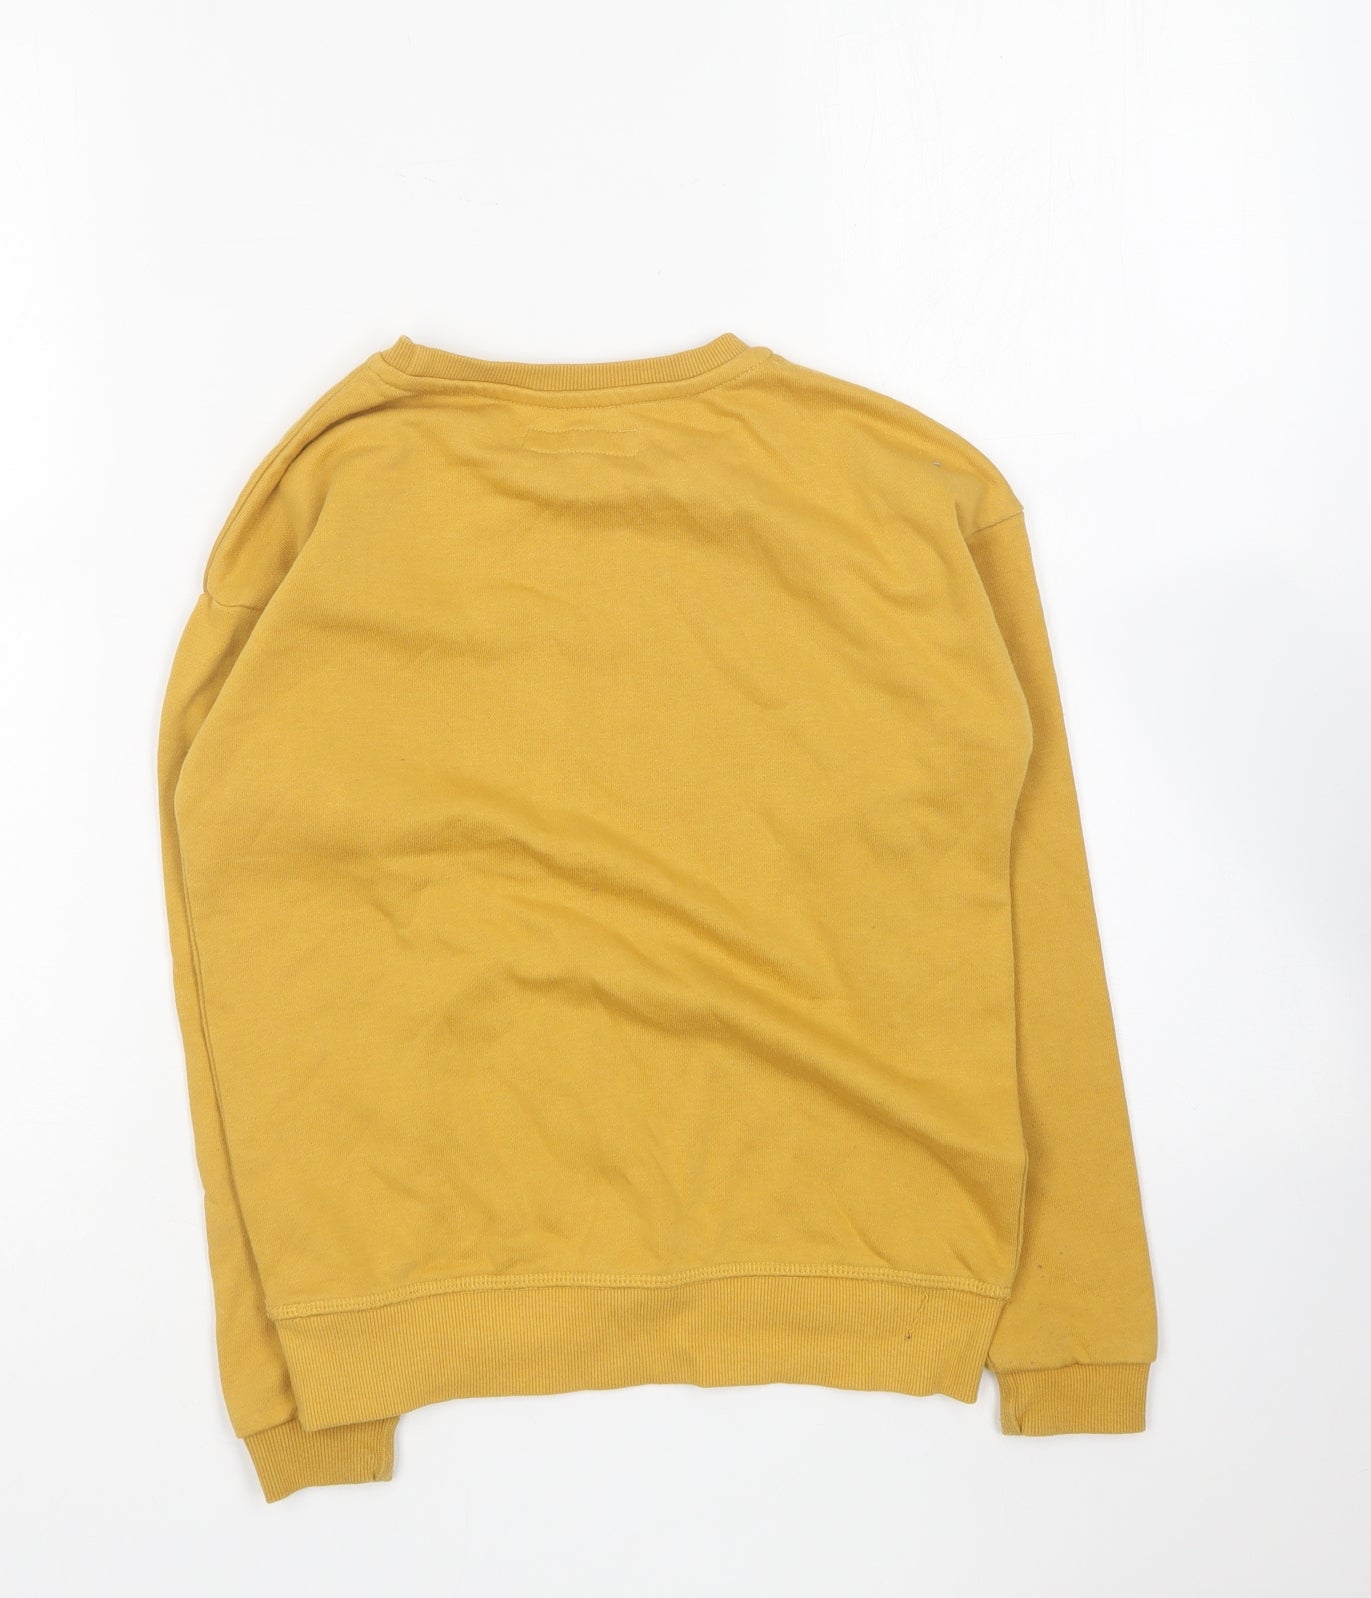 Primark Girls Yellow Round Neck Cotton Pullover Jumper Size 9-10 Years